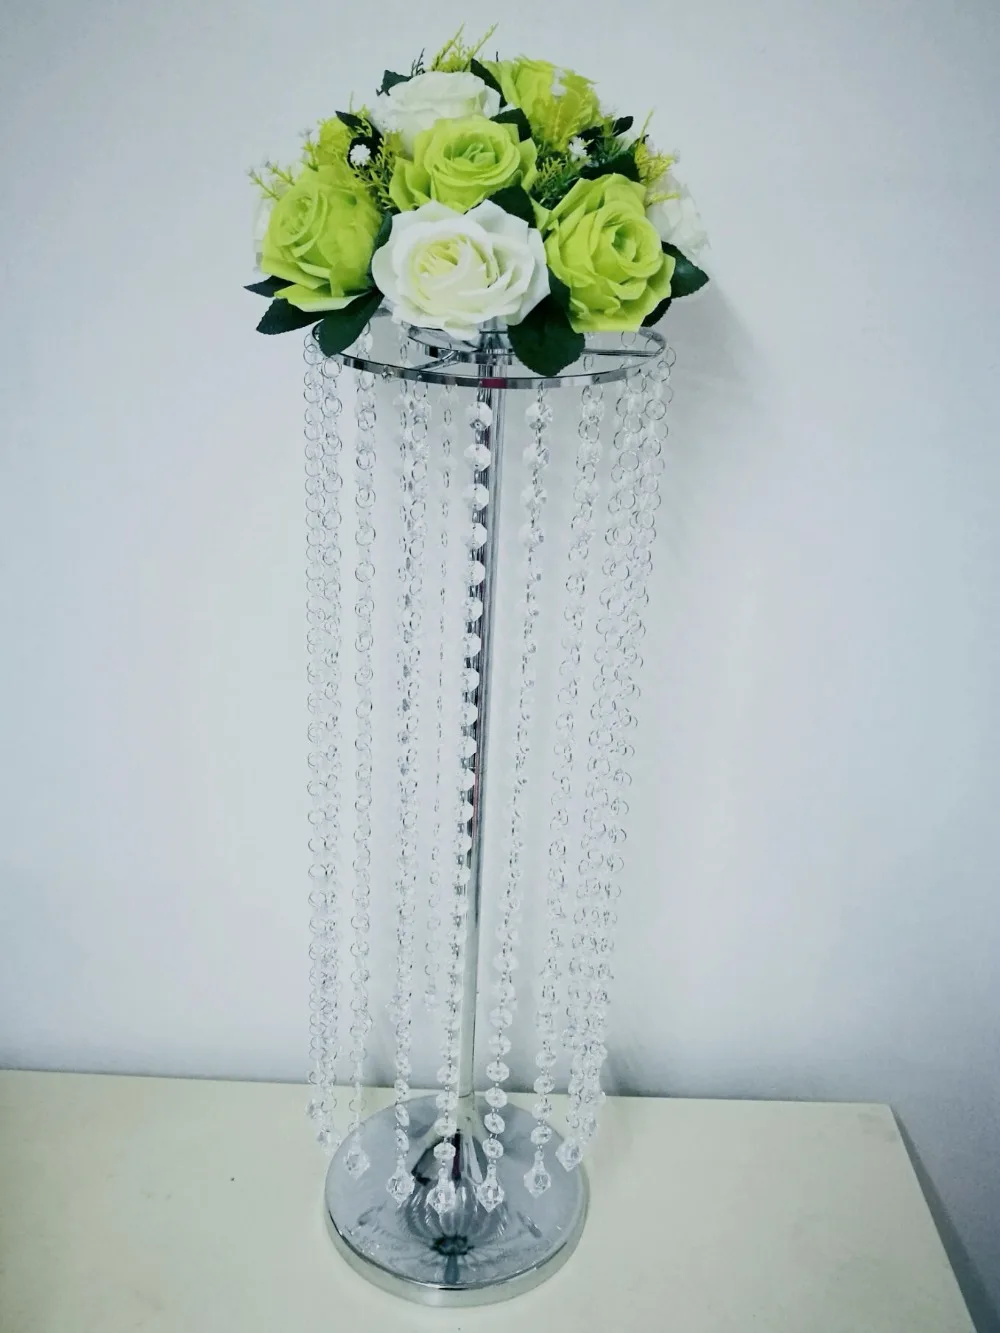 Высотой 70 см железная стойка ваза хрустальная свадебный стол центральные цветок подсвечник вечерние мероприятие способствует T-stage дорога свинец